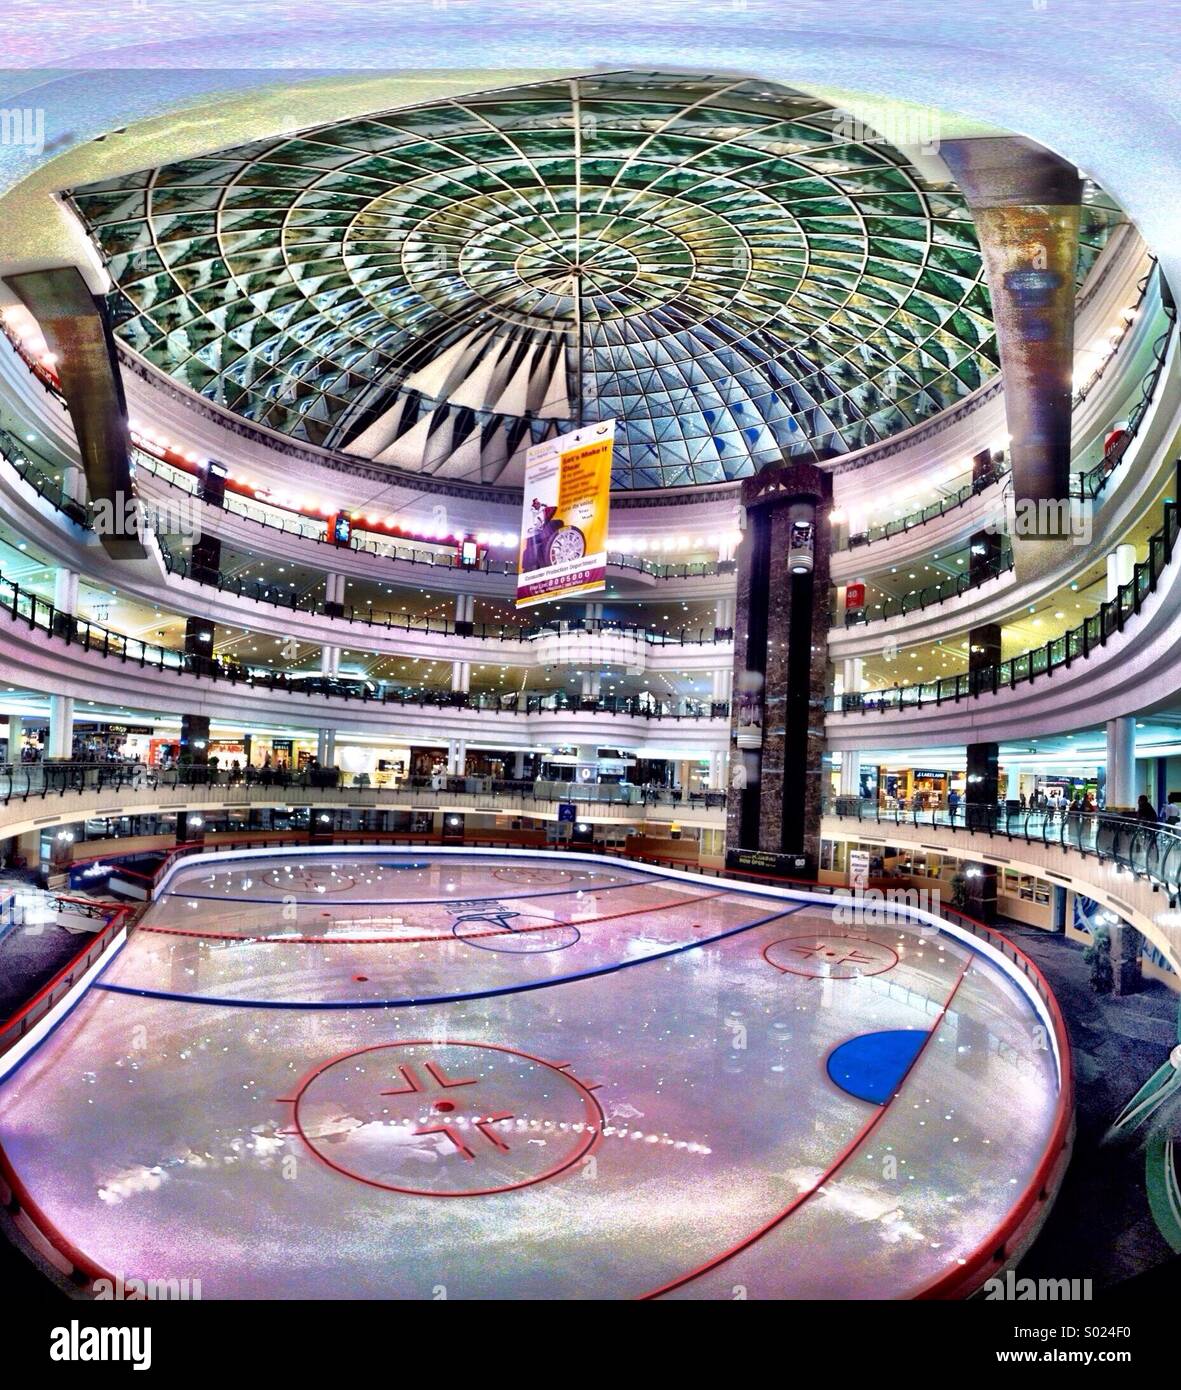 Pista di pattinaggio su ghiaccio al city center shopping mall, Doha Foto Stock